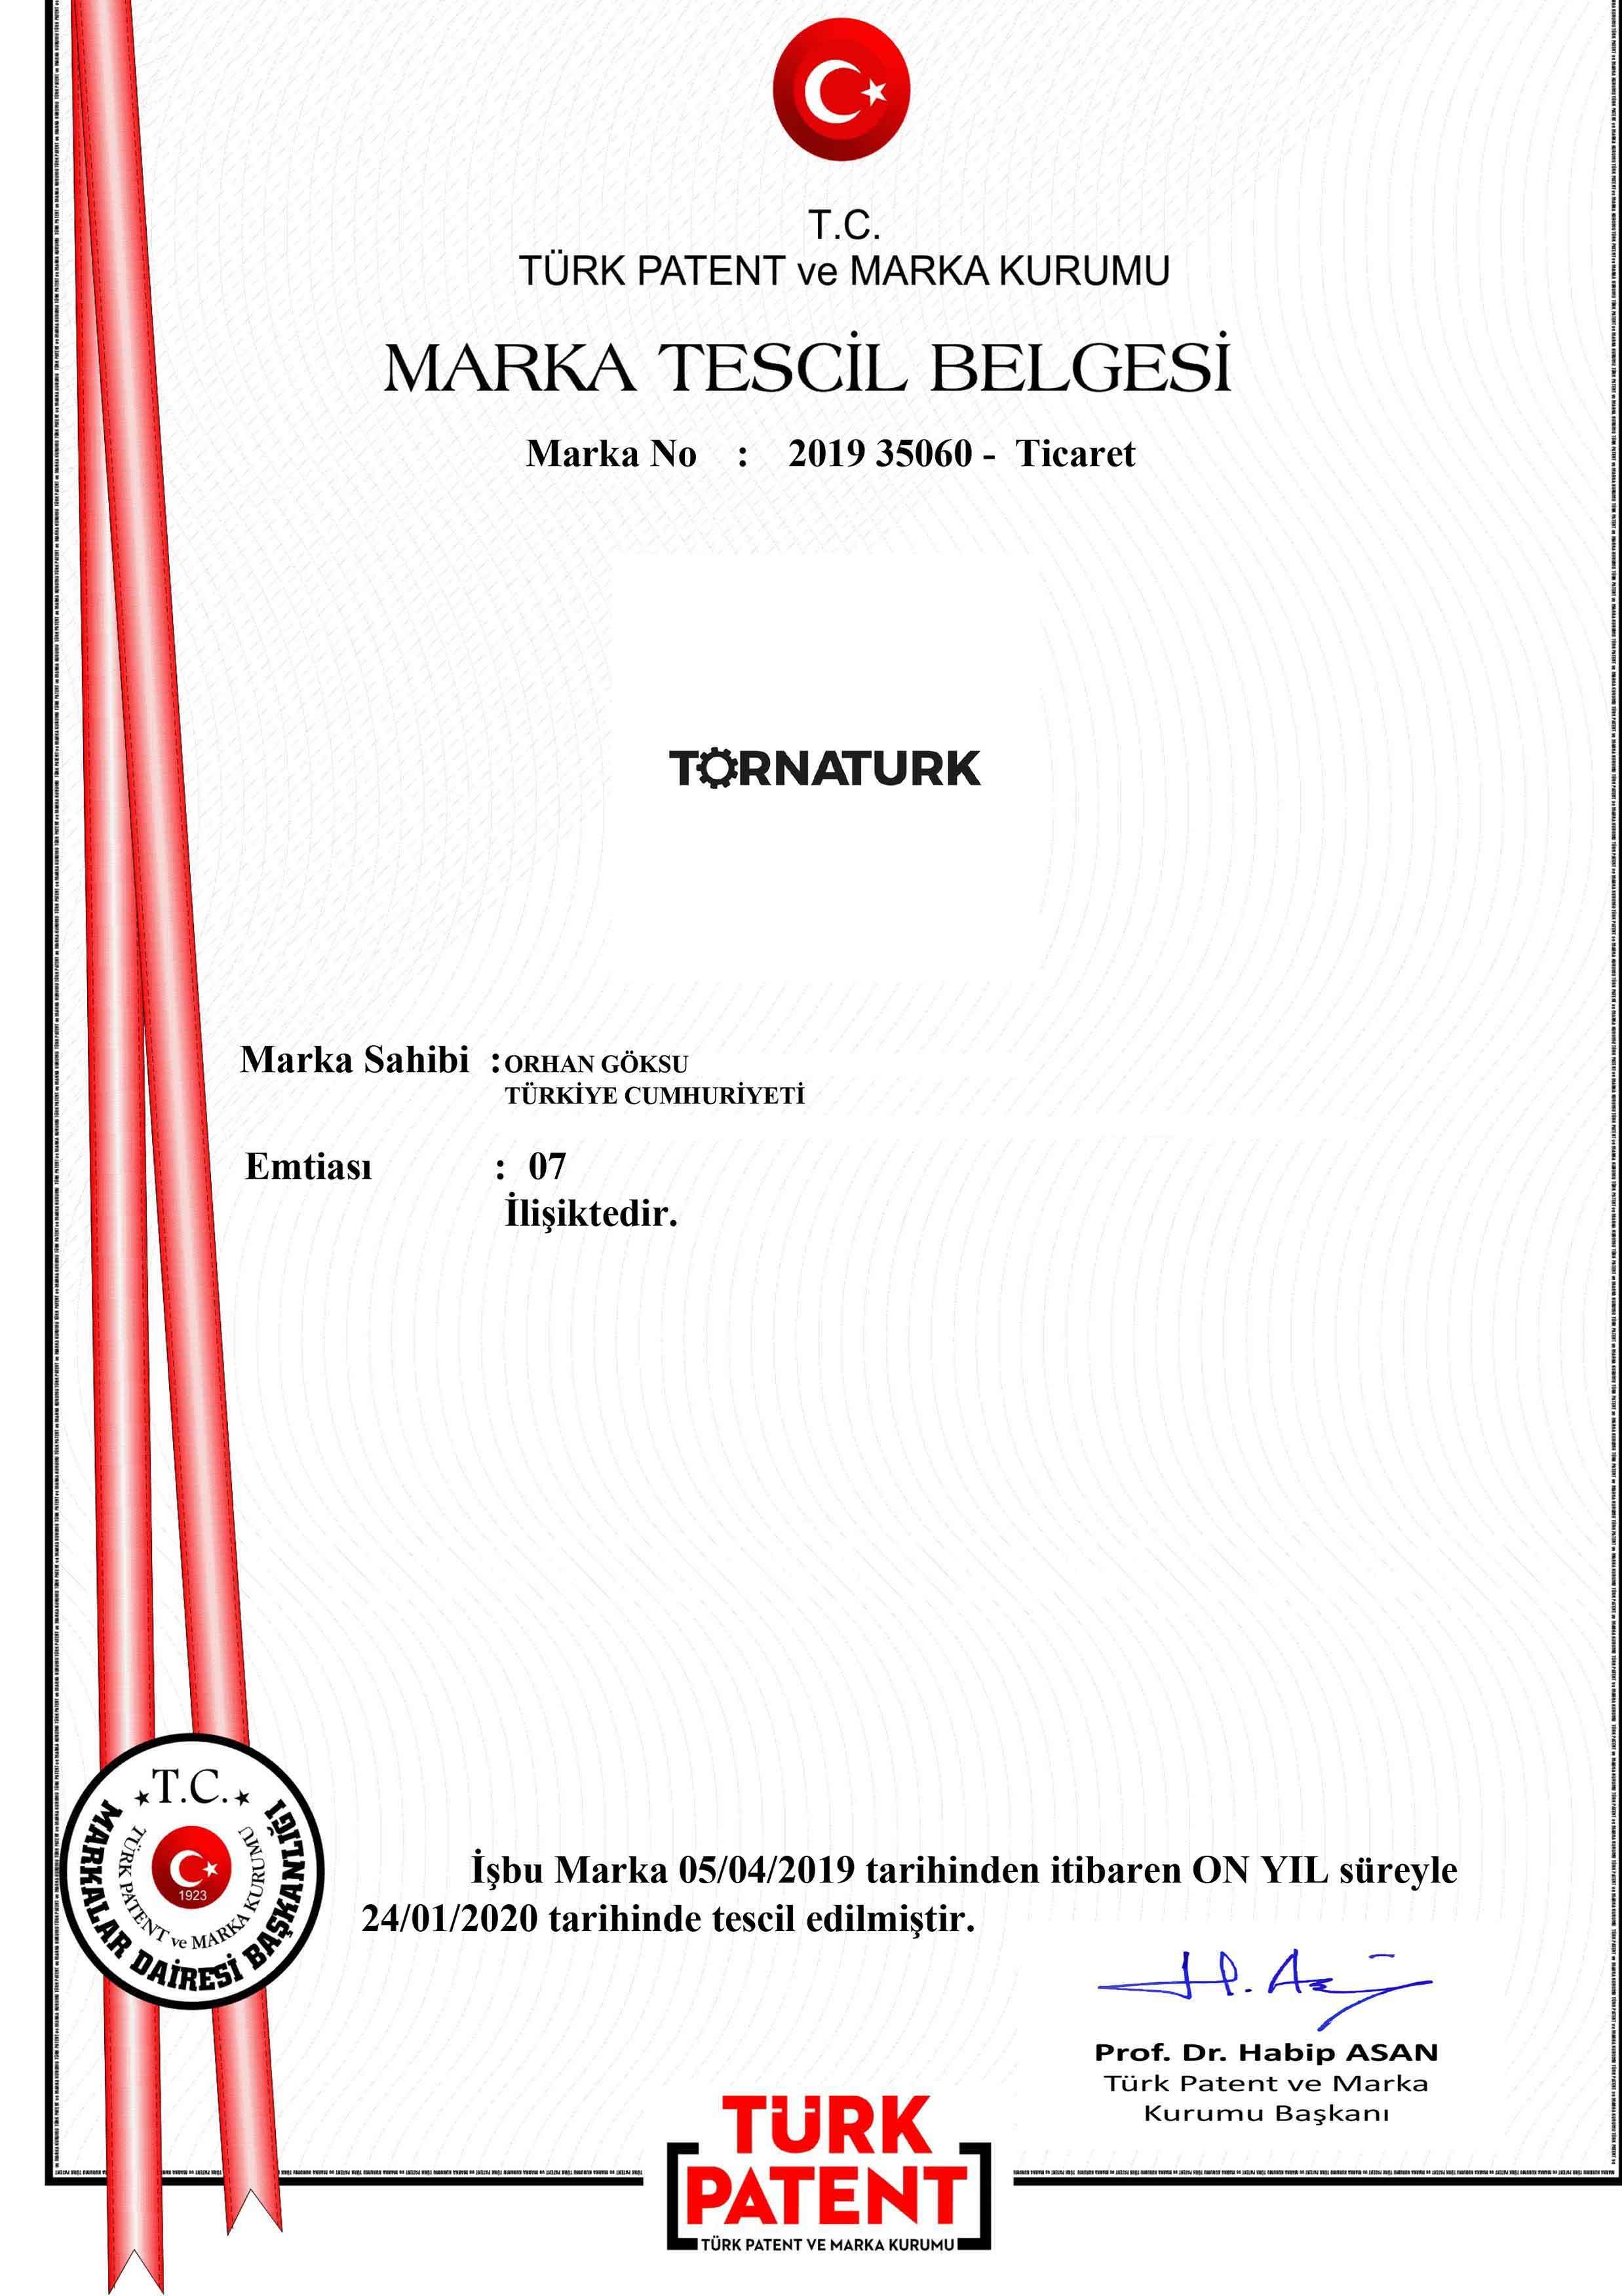 Torna Türk Marka Tescil Patenti